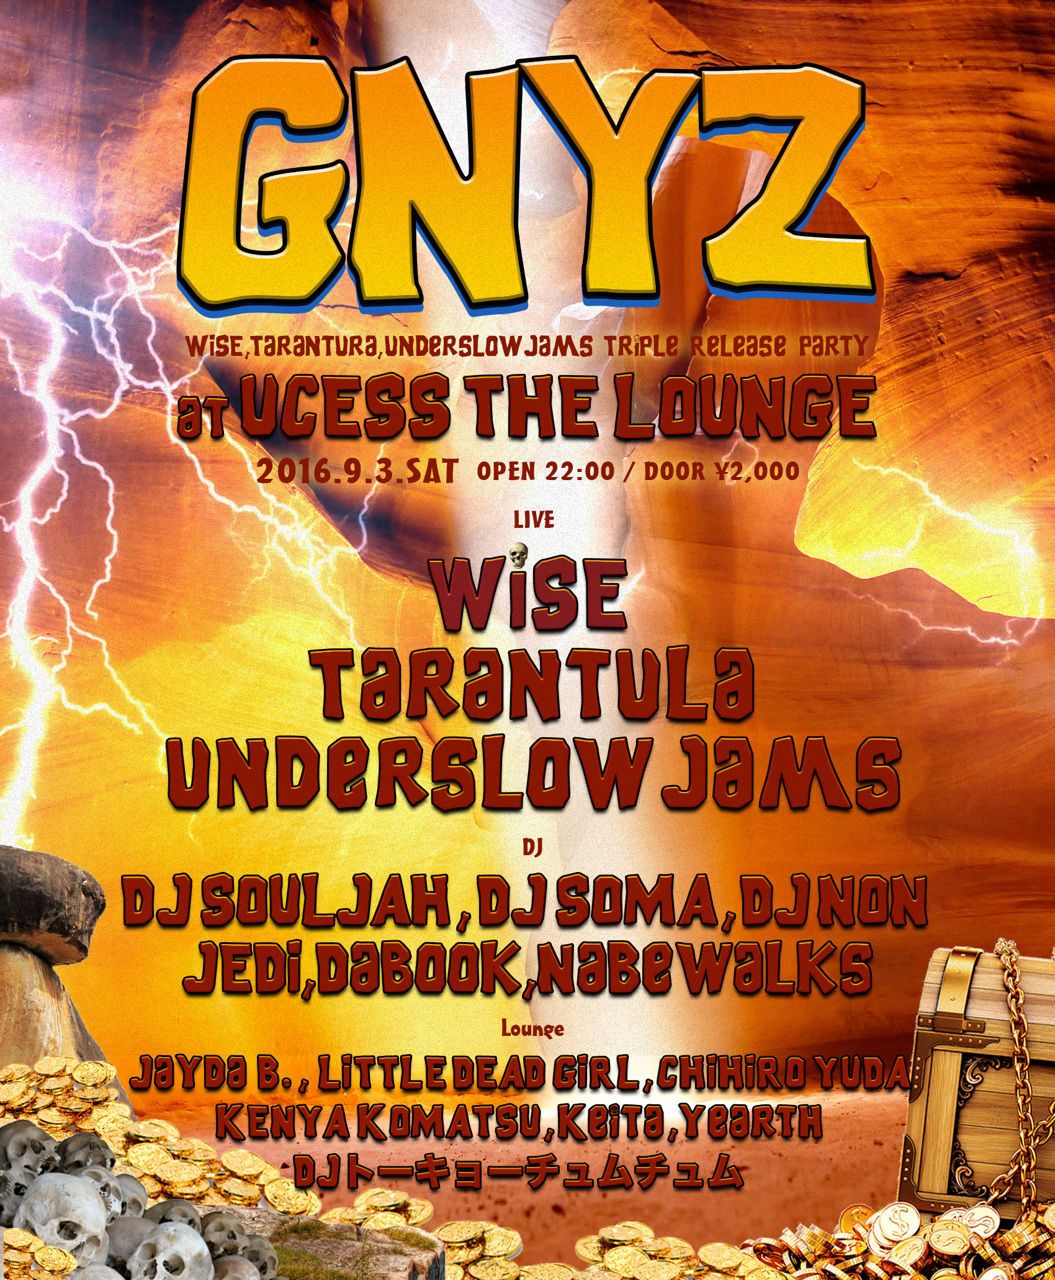 “GNYZ” - WISE,Tarantura,underslowjams Triple Release Party -